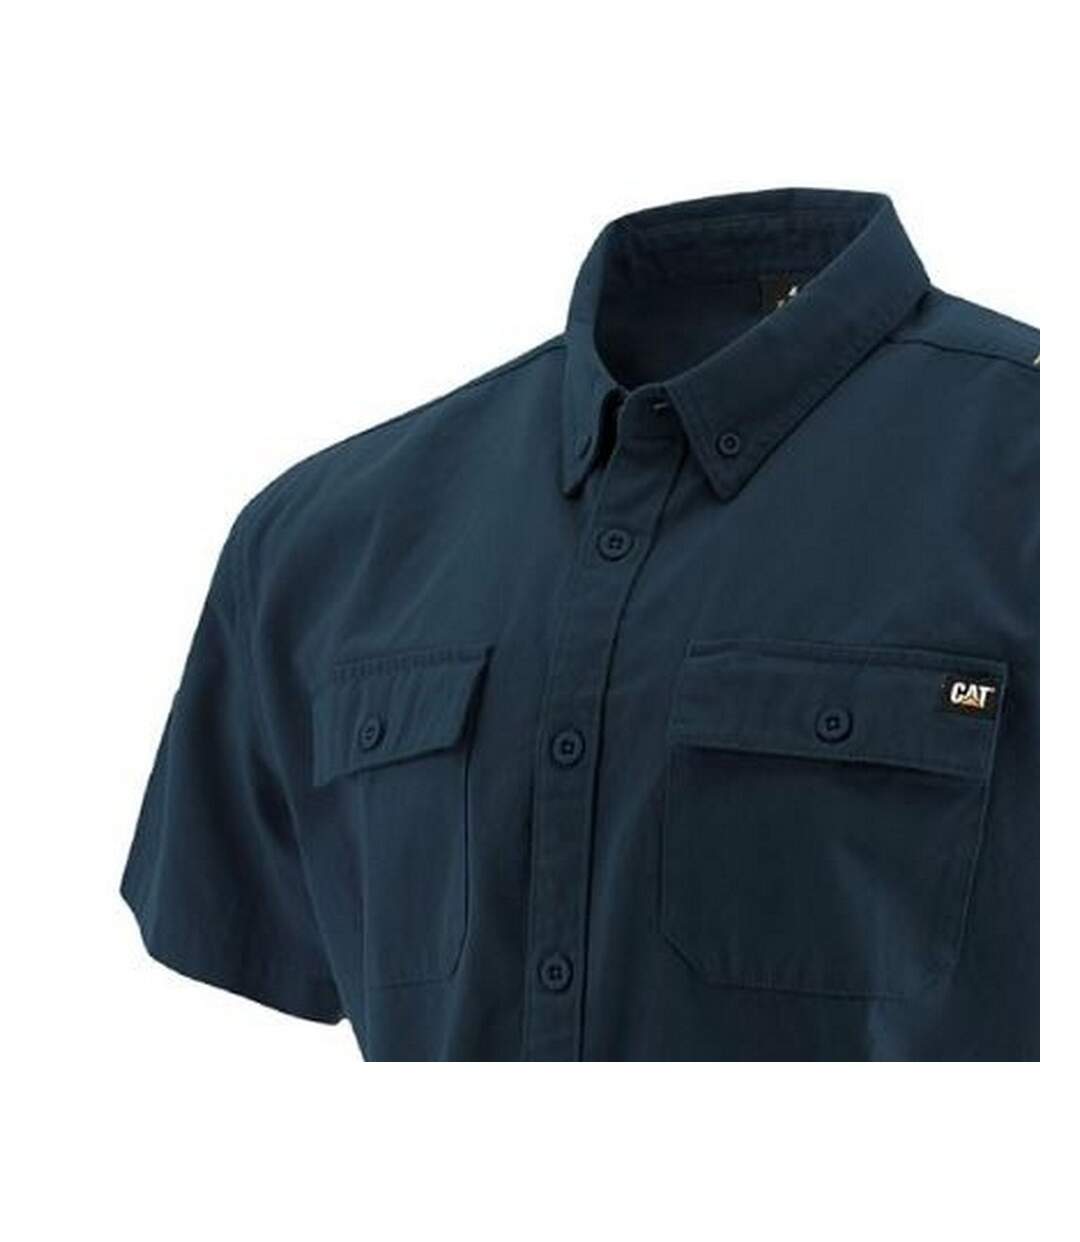 Caterpillar Mens Button Up Short Sleeve Work Shirt (Navy) - UTFS6669